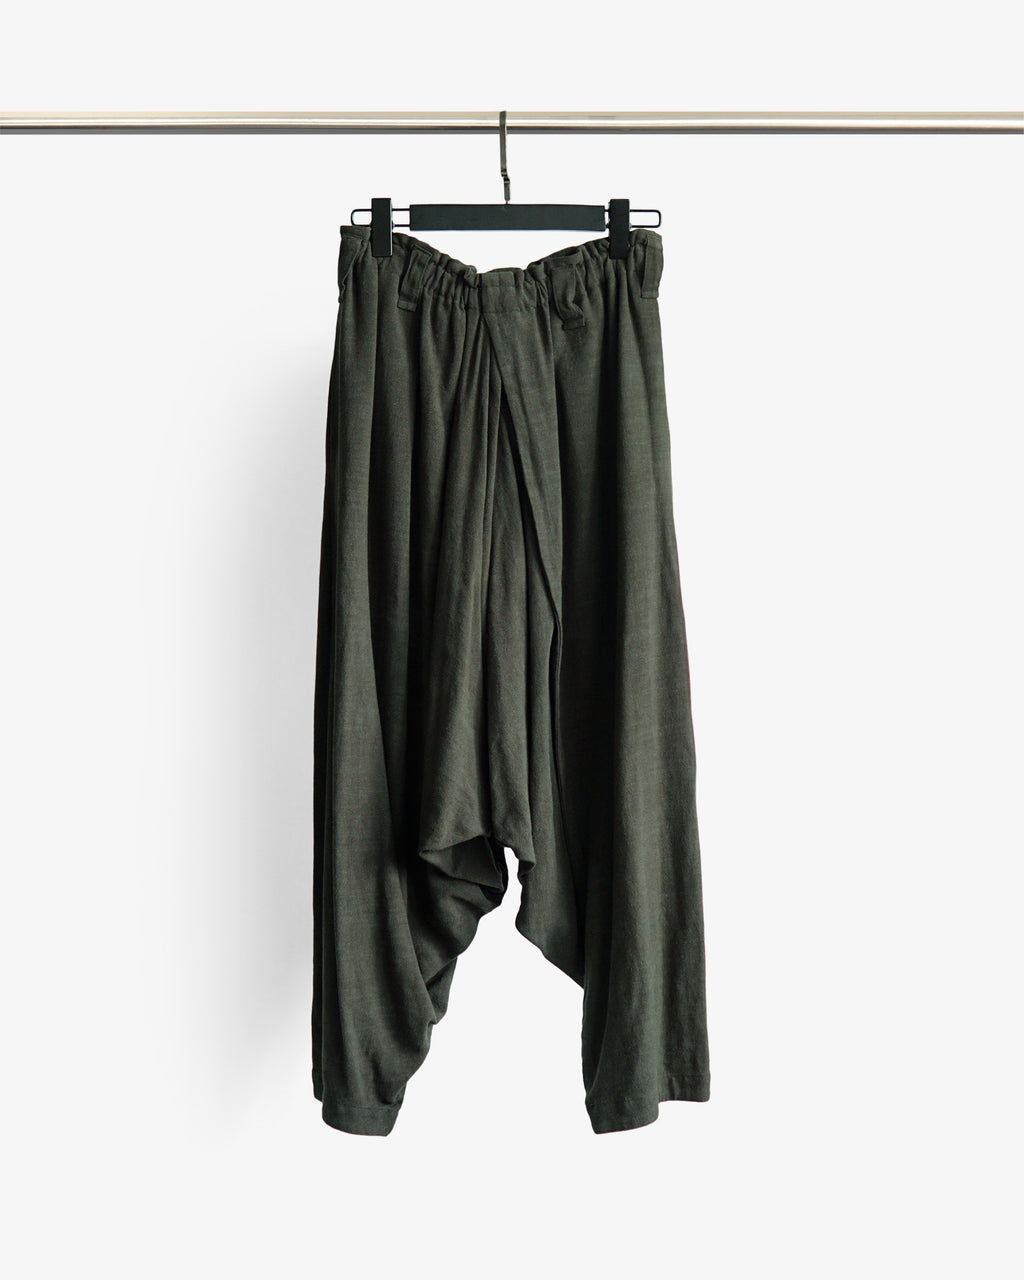 ROSEN O-Ren Trousers in Crosshatched Linen Sz 1